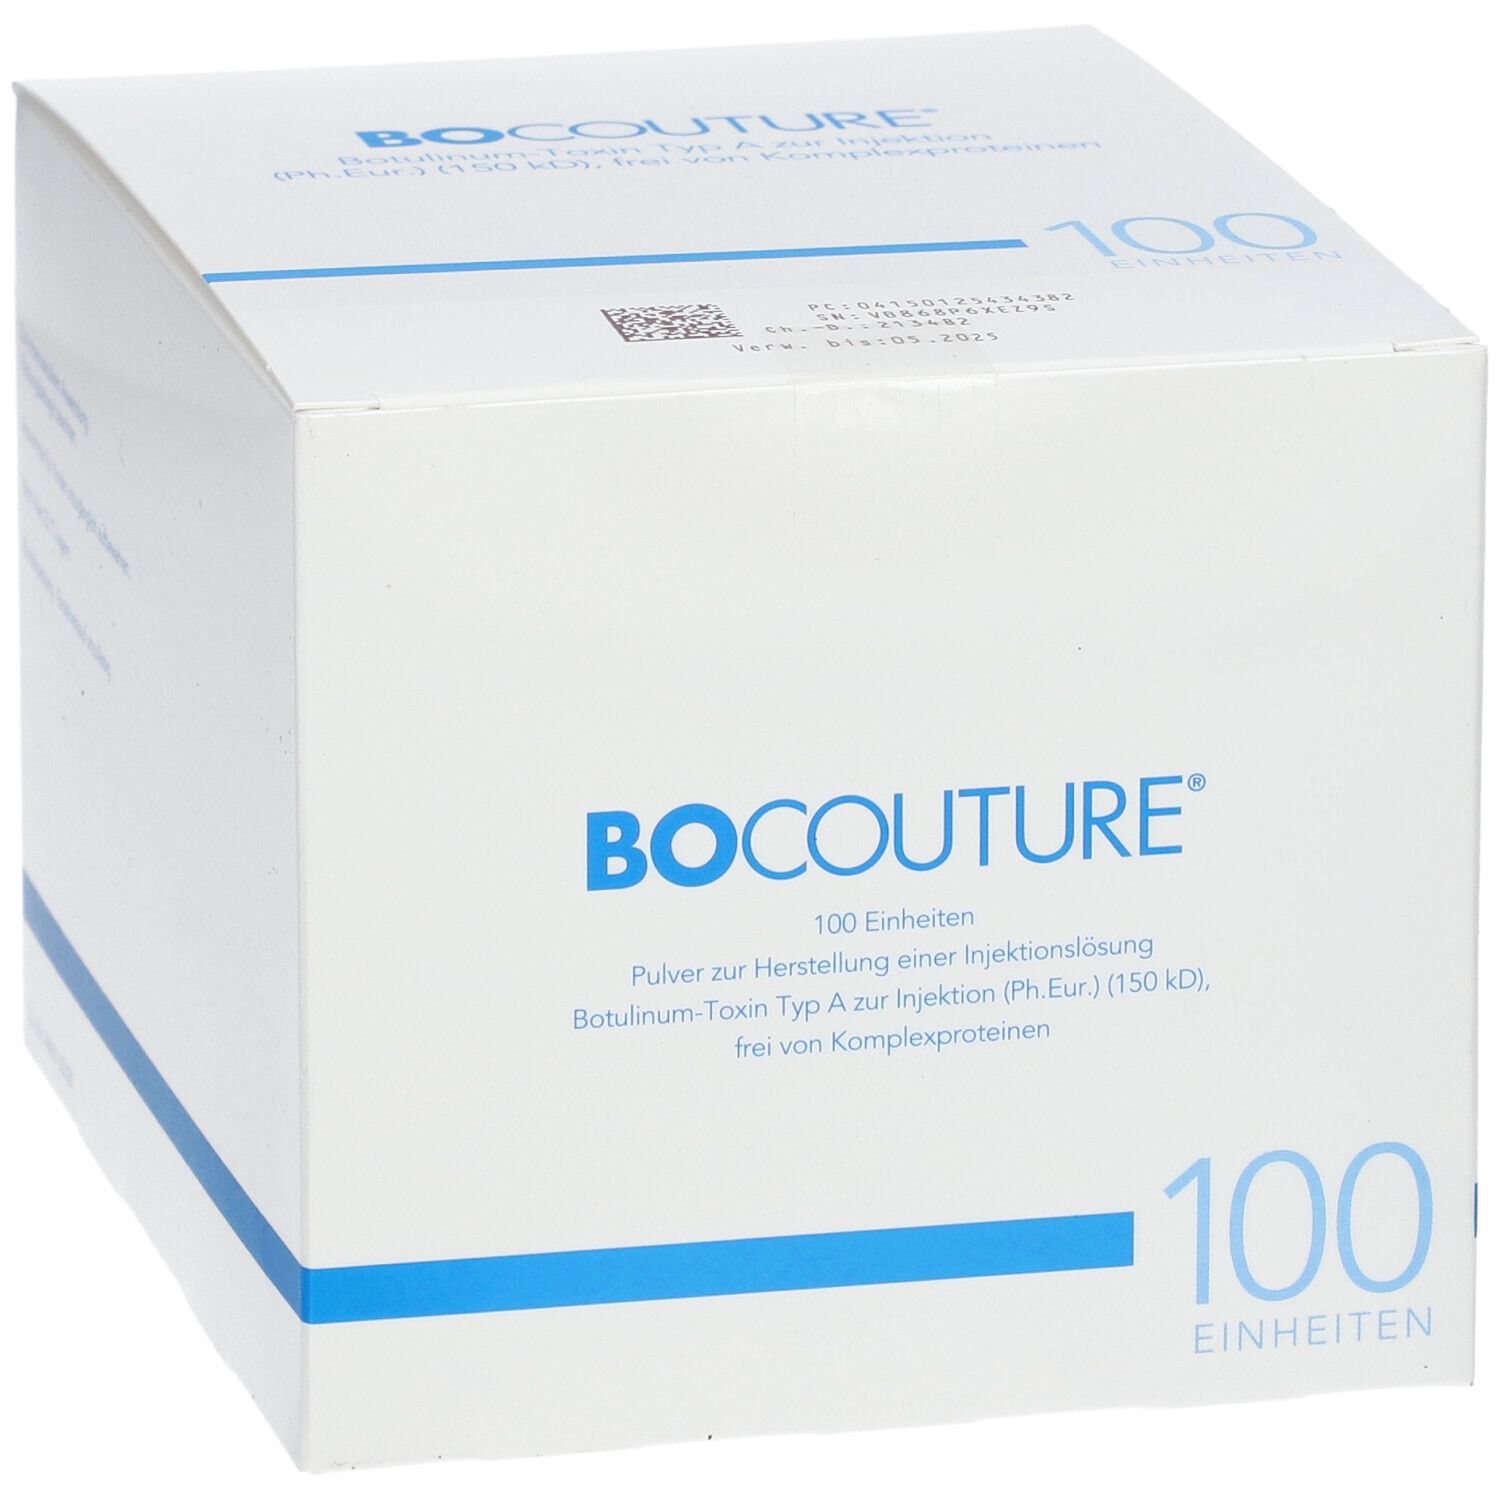 BOCOUTURE® 100 Einheiten